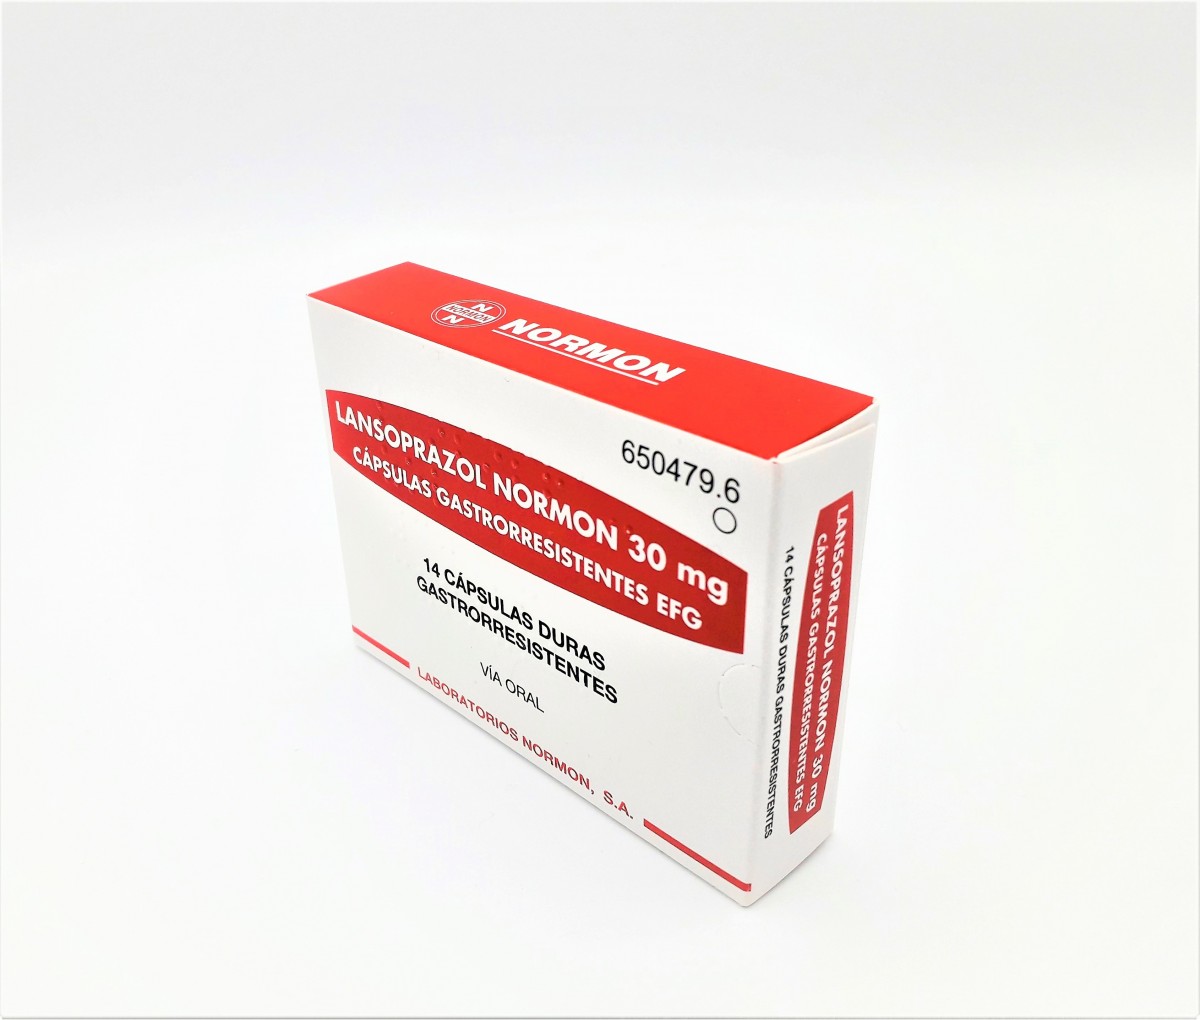 LANSOPRAZOL NORMON 30 mg CAPSULAS GASTRORRESISTENTES EFG, 28 cápsulas fotografía del envase.